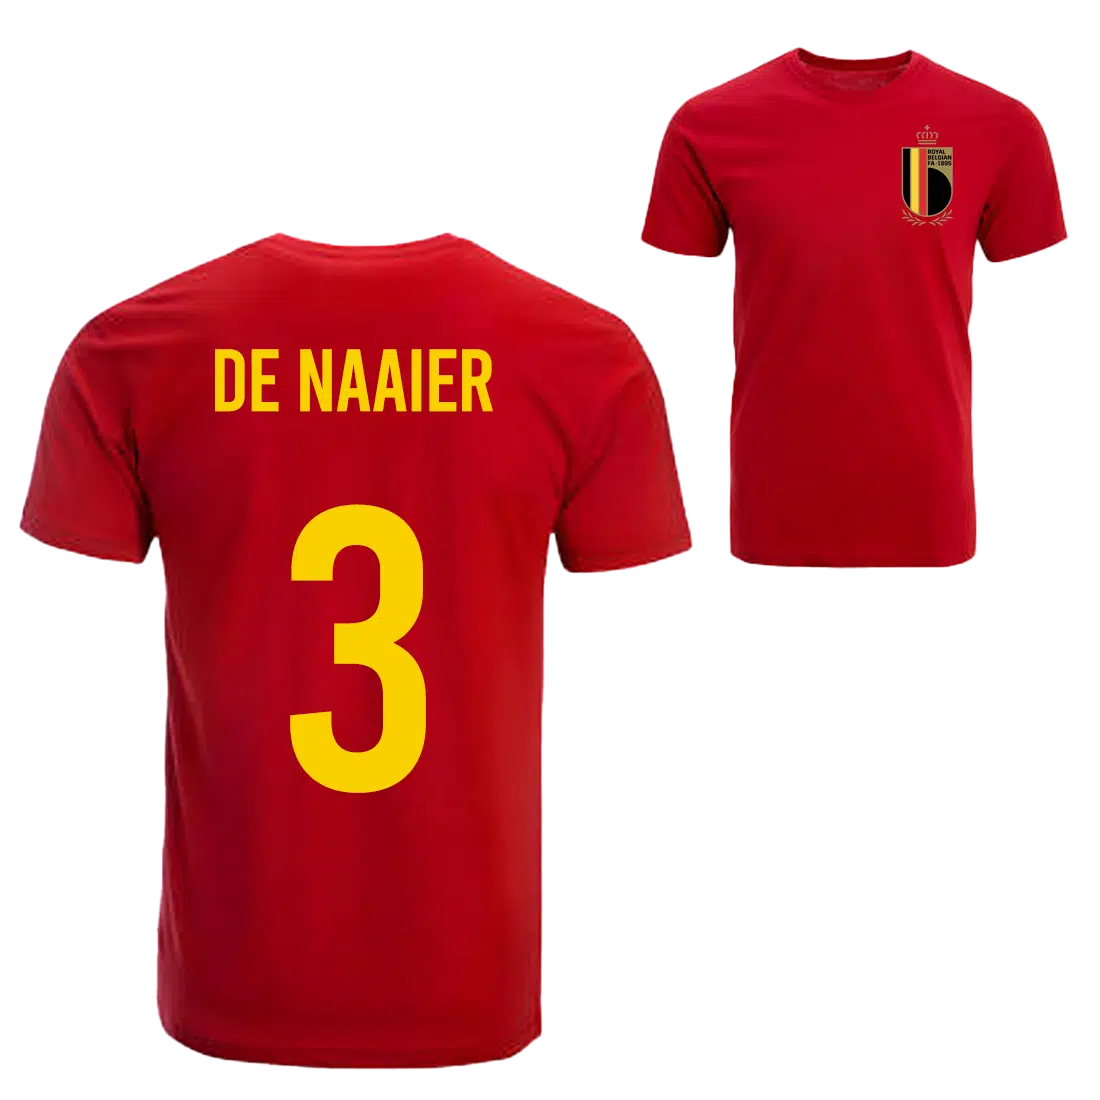 De Naaier Belgie voetbalshirt sfeer